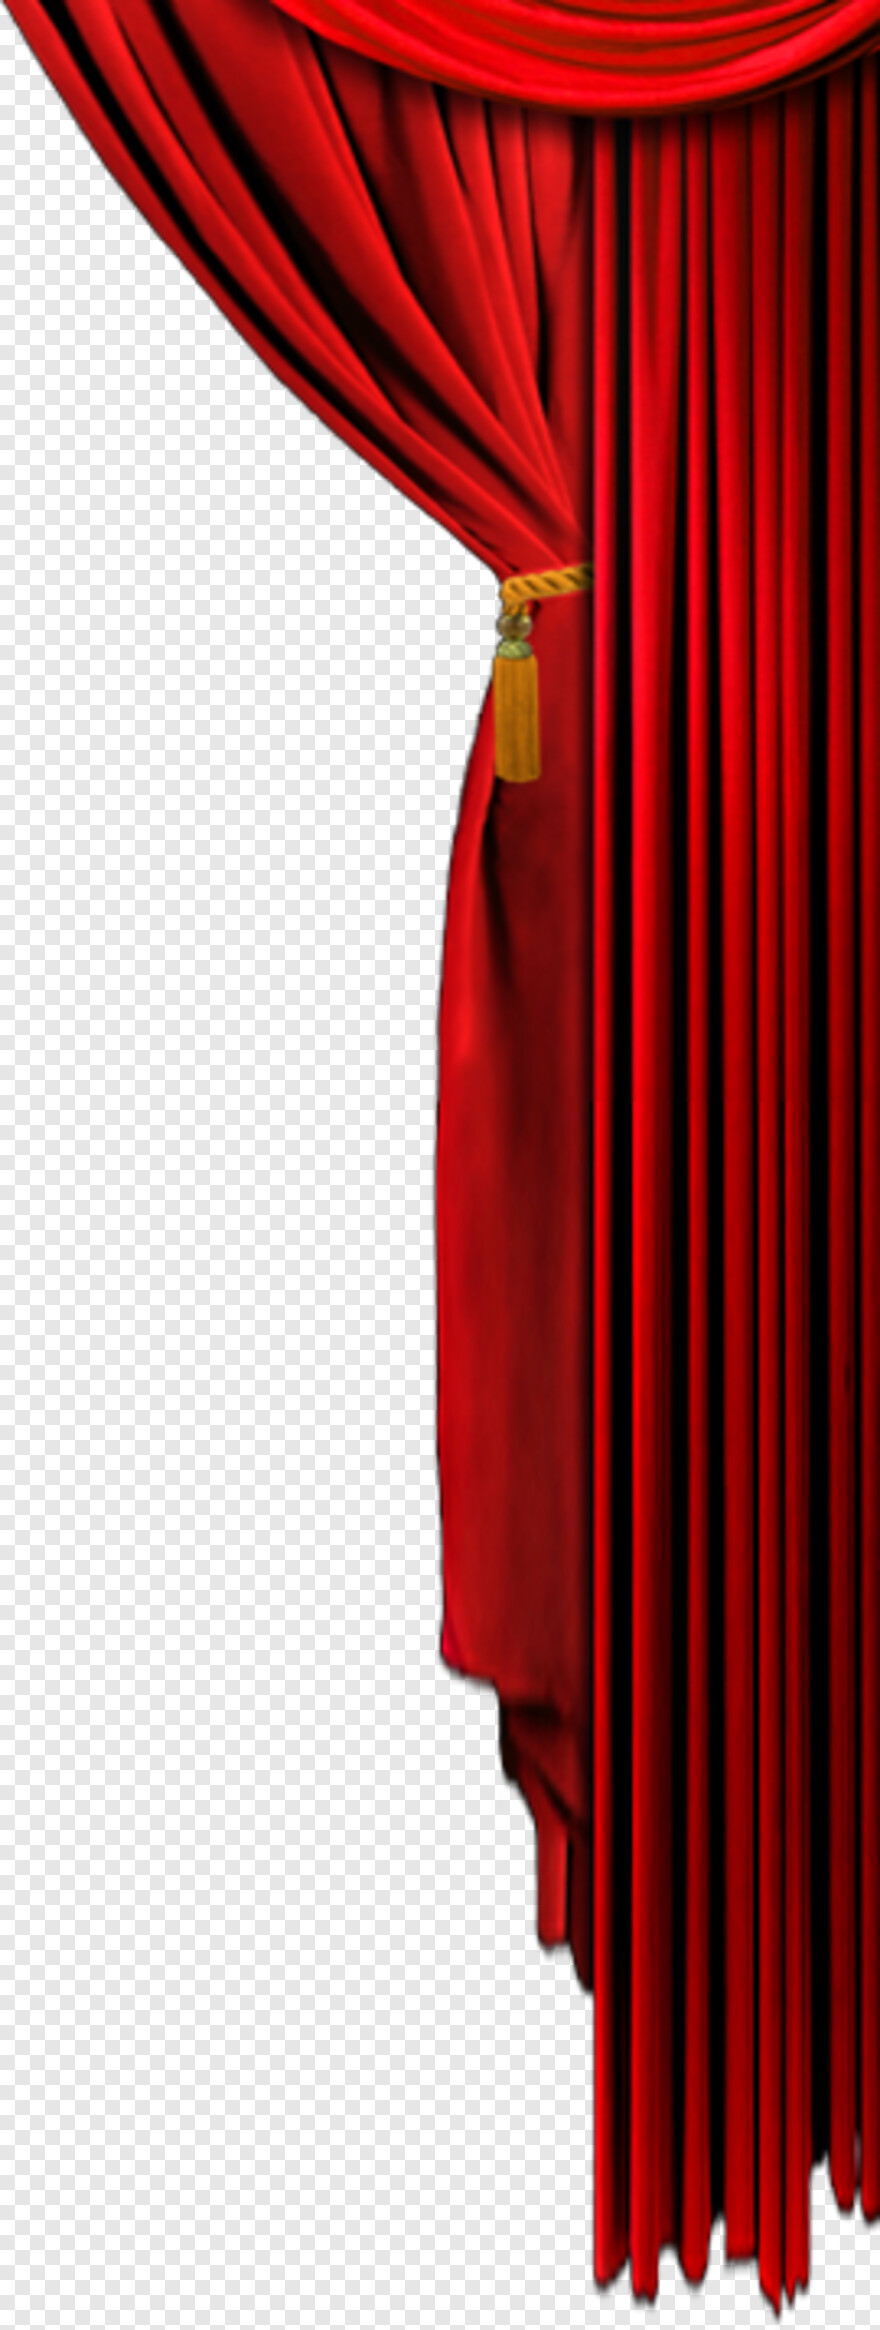 curtain # 935548